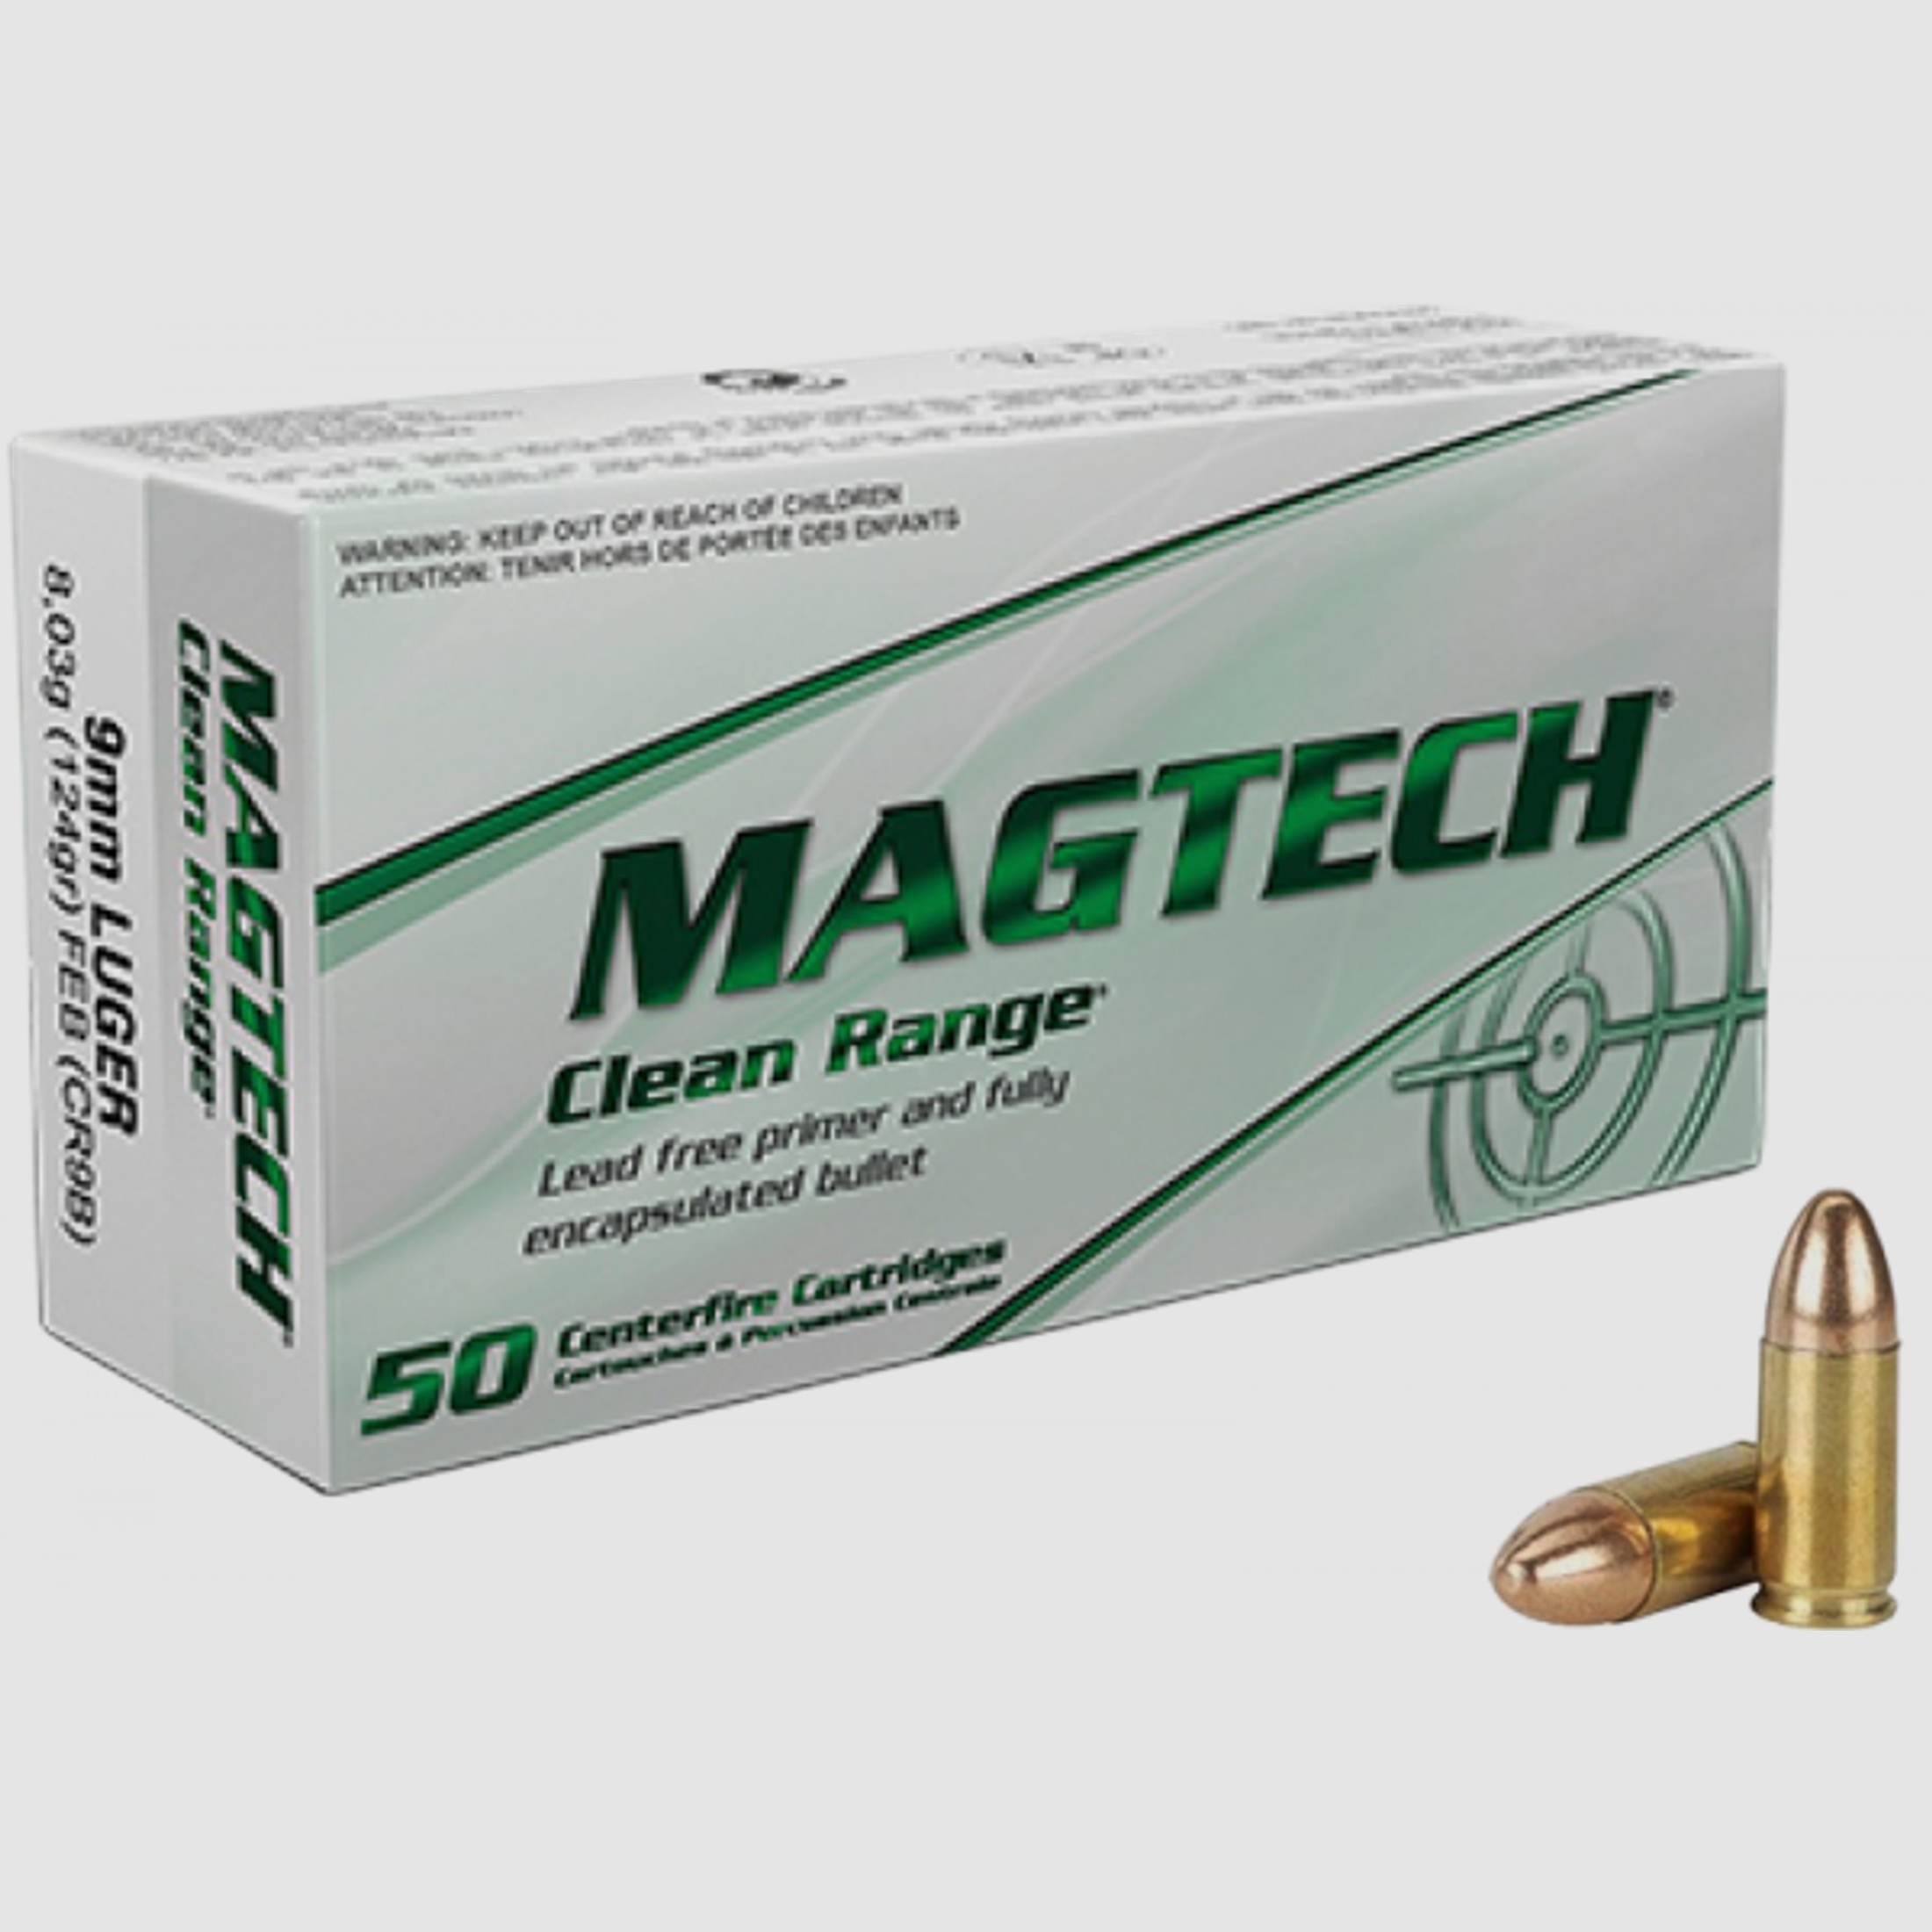 Magtech Clean Range 9mm Luger (9x19) Magtech FEB 124 grs Pistolenpatronen